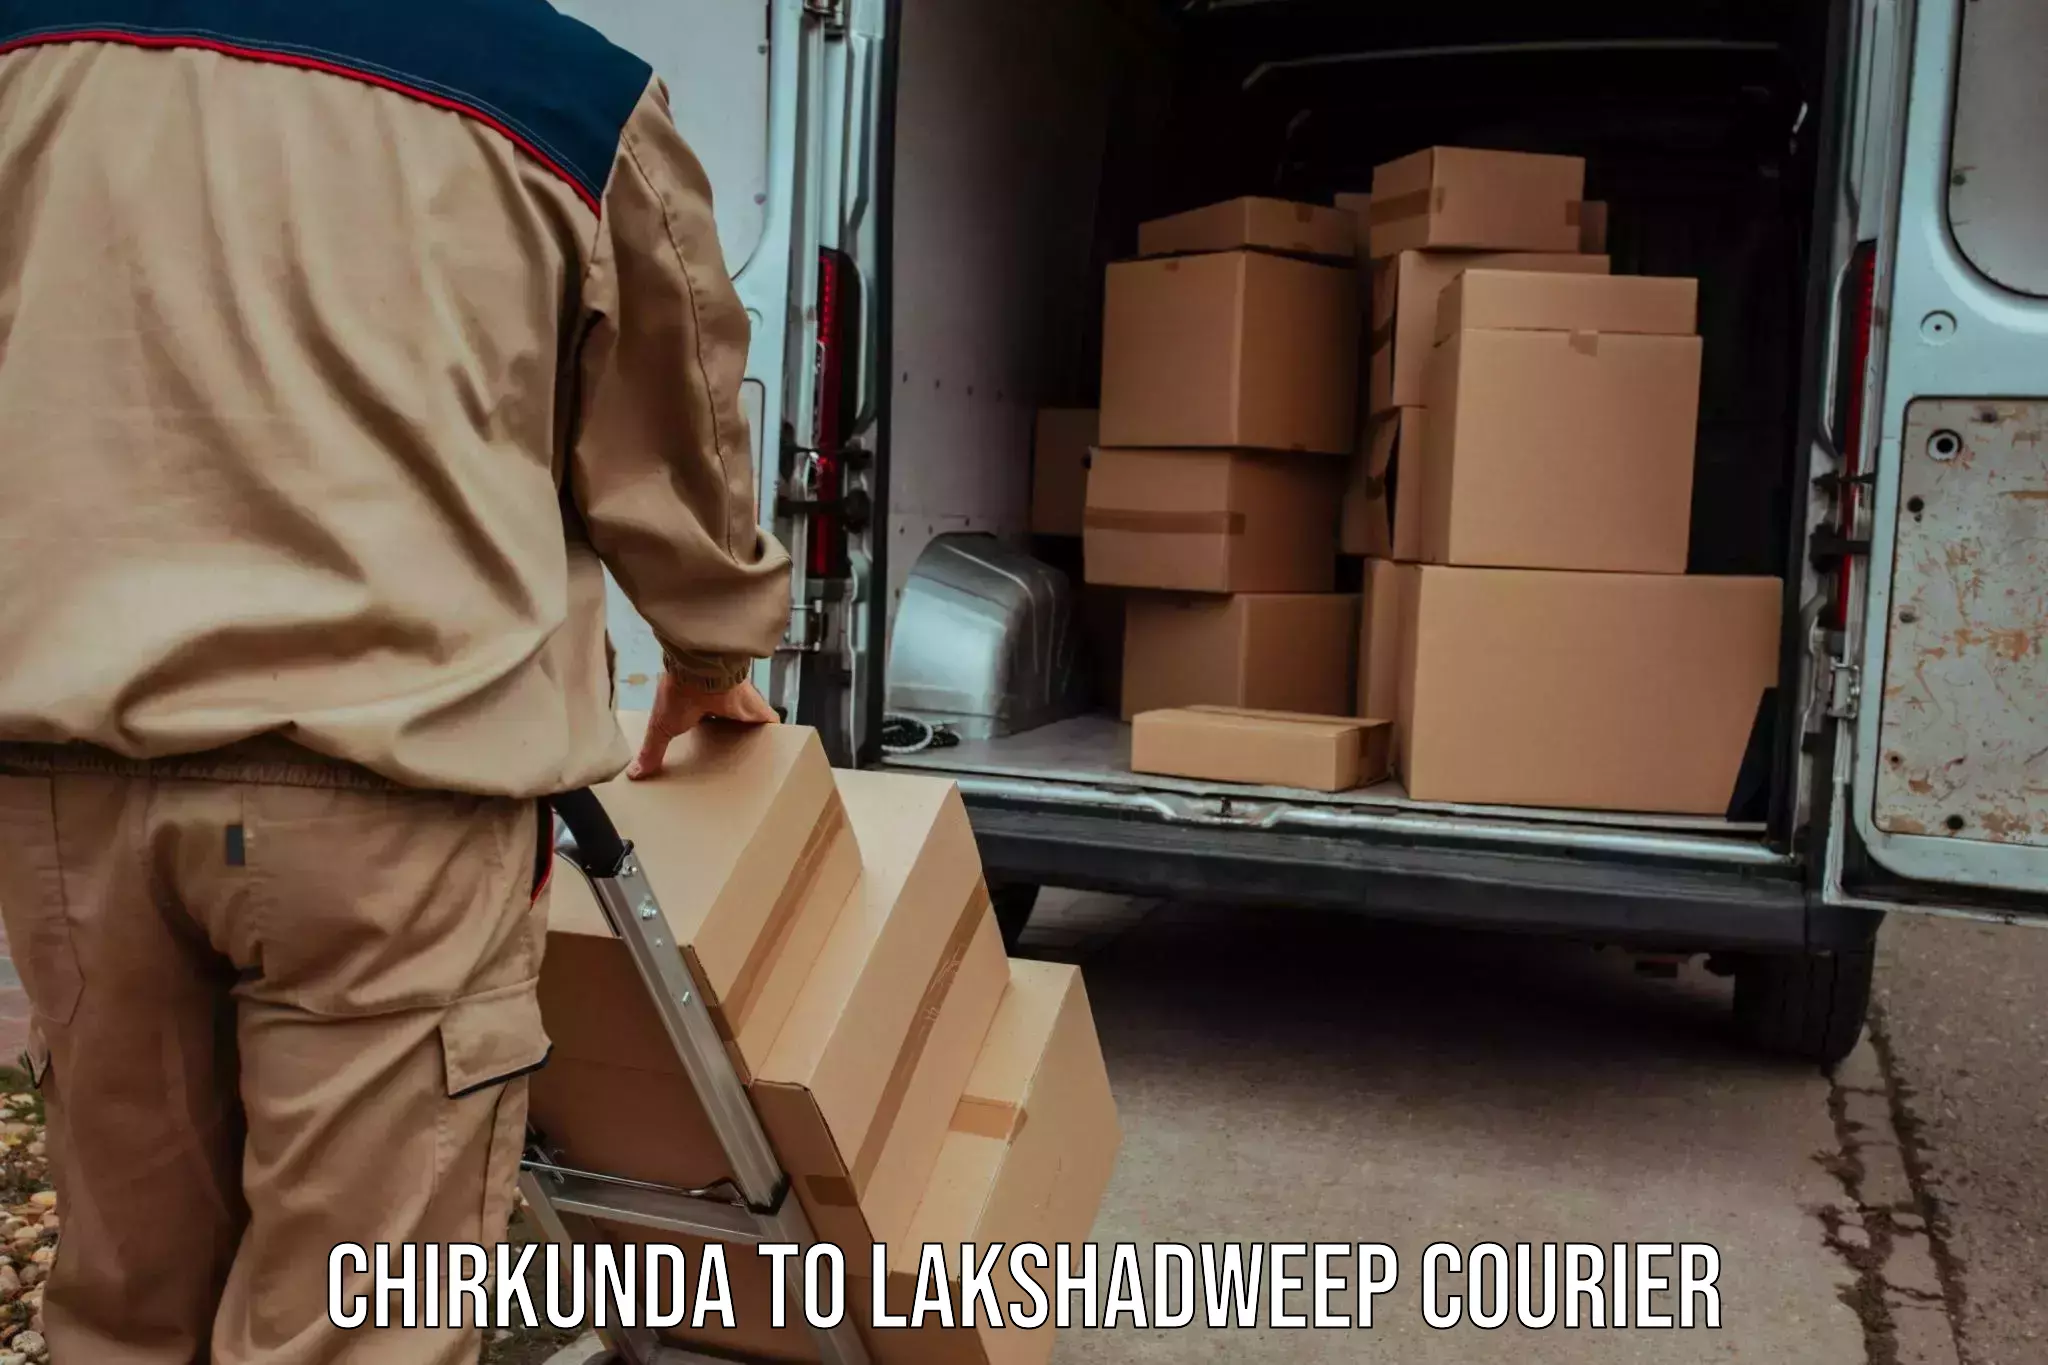 Holiday shipping services Chirkunda to Lakshadweep